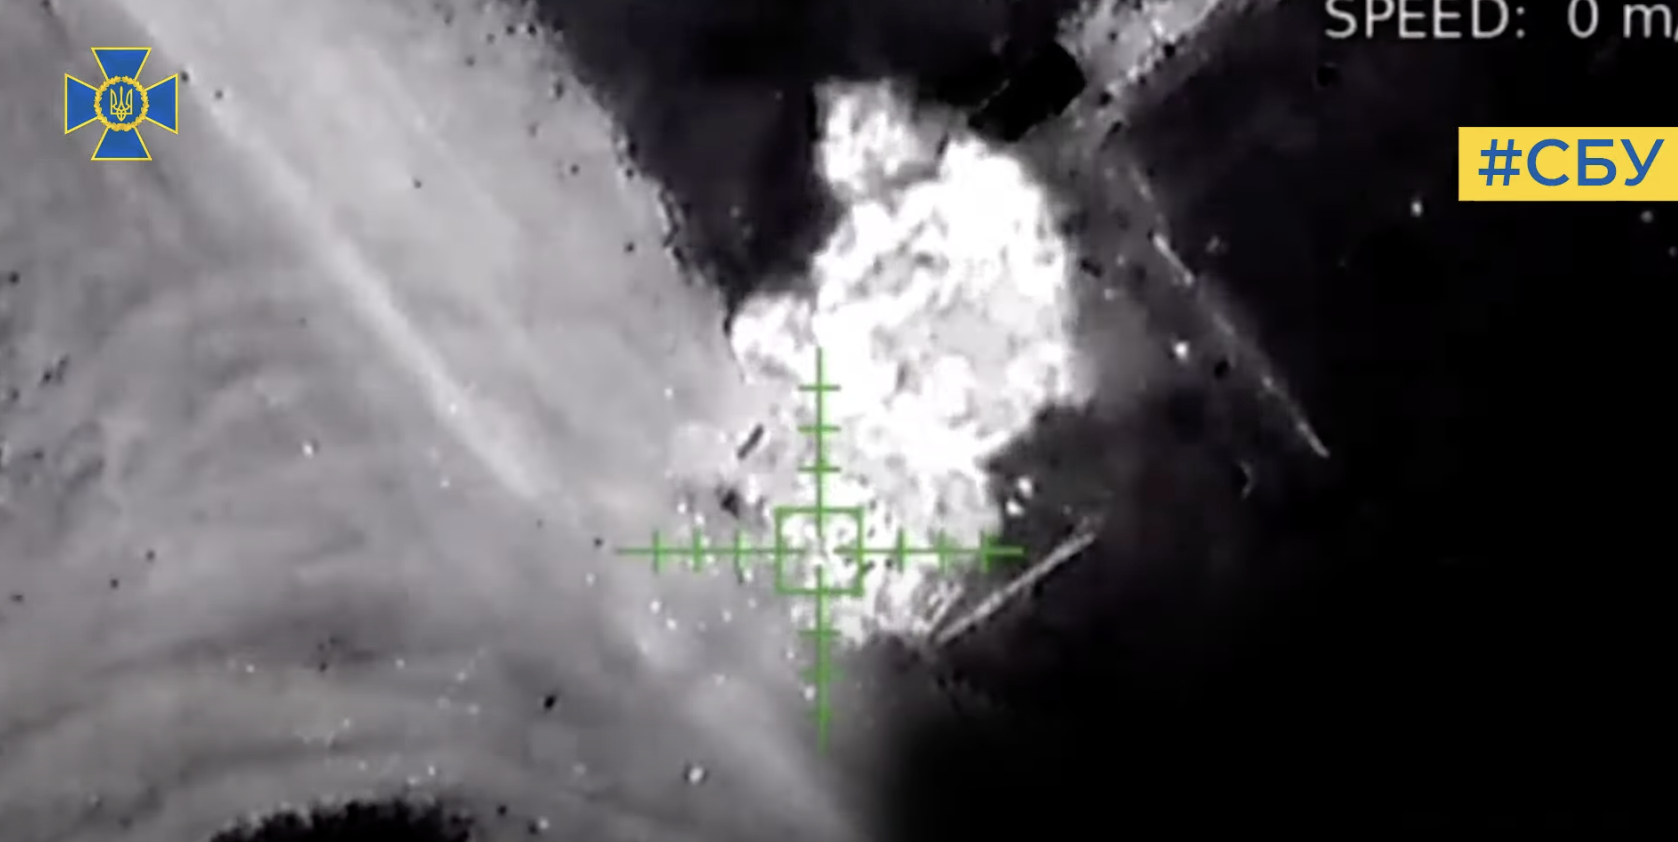 Ювелирная работа операторов дронов: спецназовцы СБУ за неделю уничтожили 21 единицу военной техники РФ. Видео